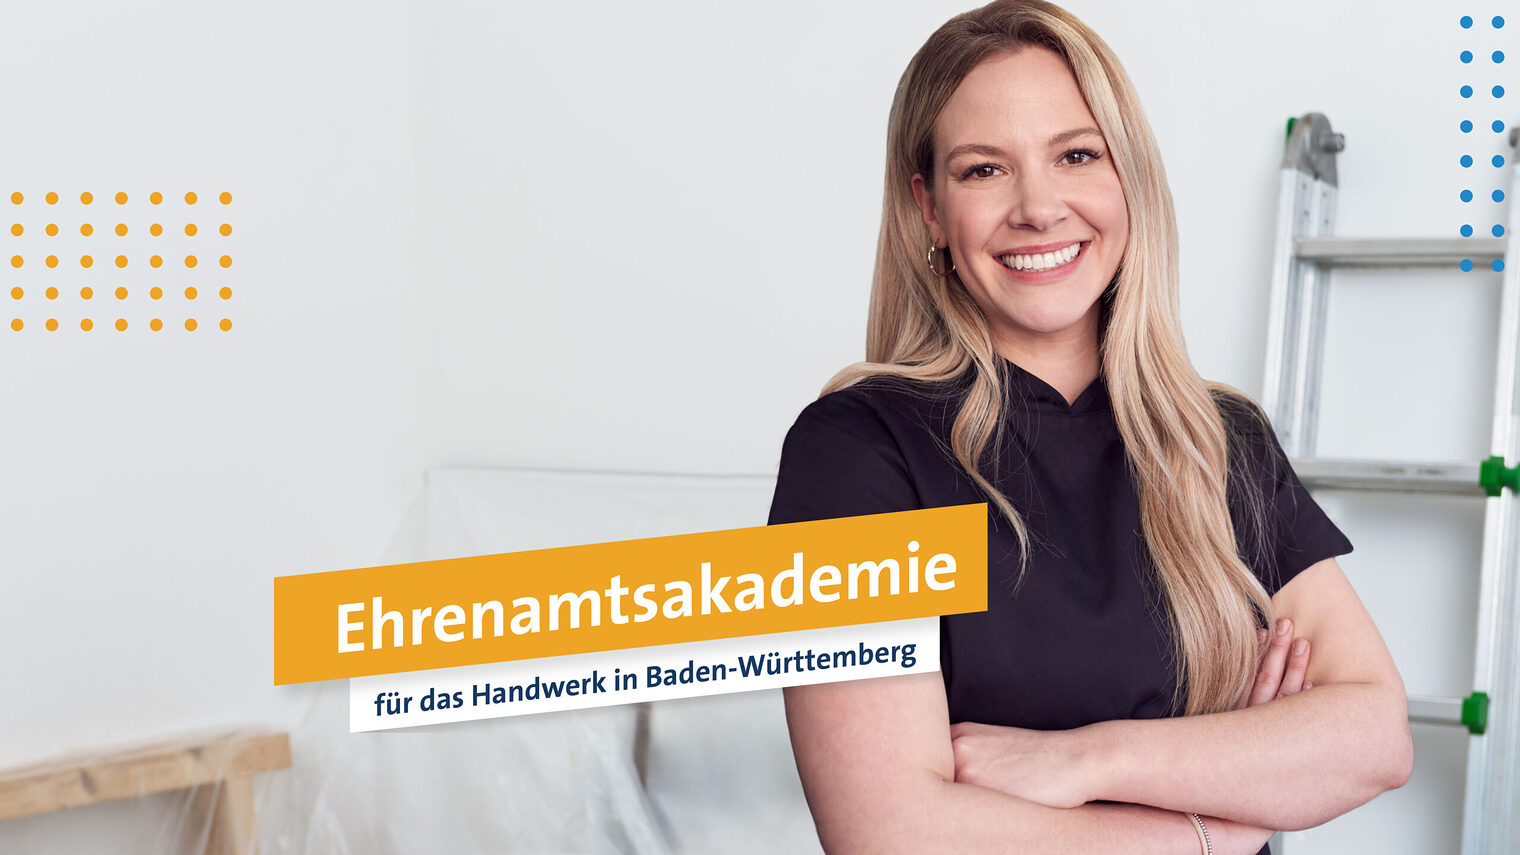 Junge Frau mit verschränkten Armen lächelt in die Kamera, Schriftzug: Ehrenamtsakademie für das Handwerk in Baden-Württemberg.